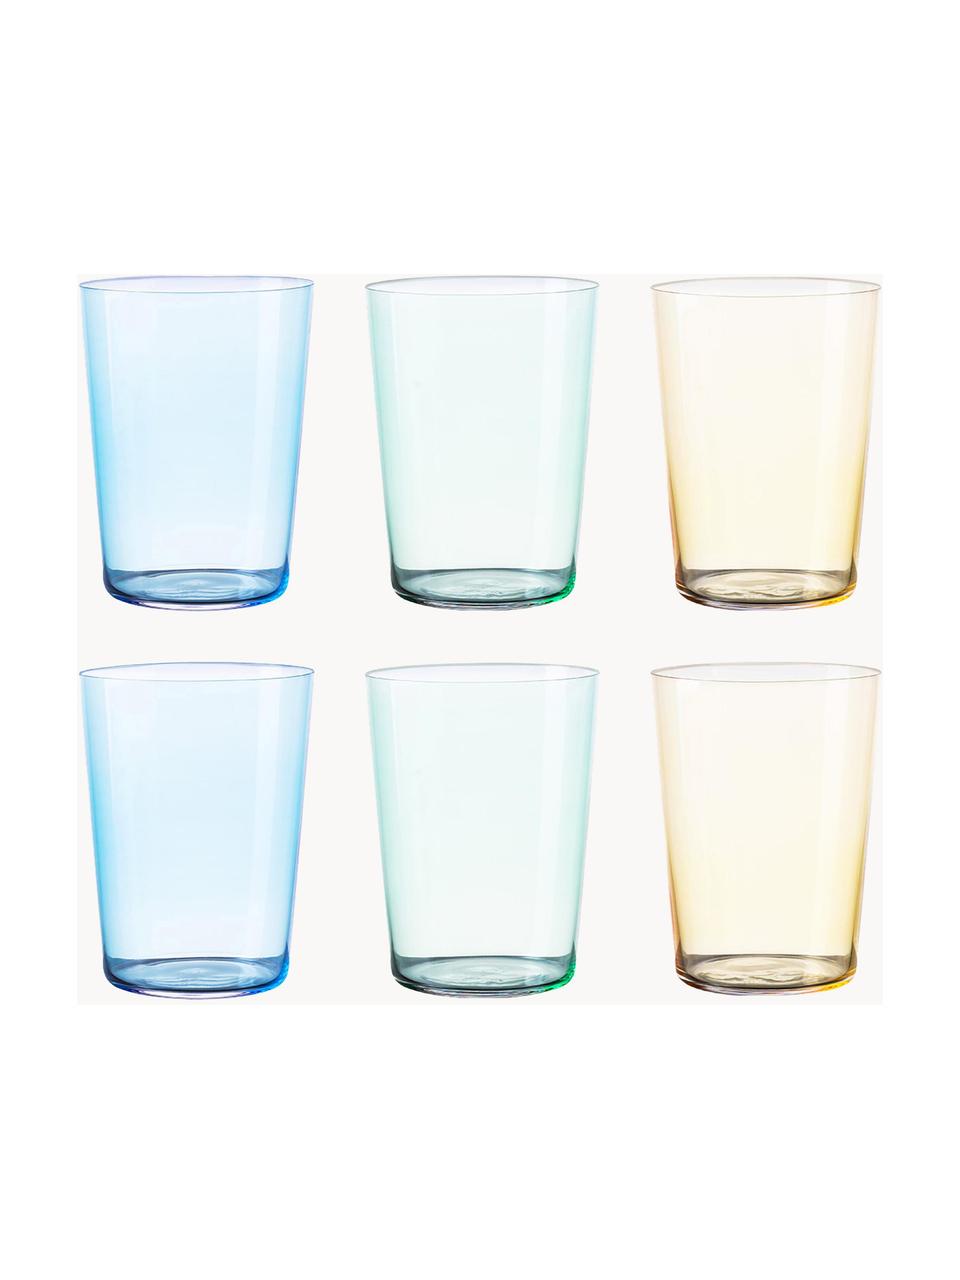 Waterglazen Today, set van 6, Glas, Blauw, groen, geel, Ø 9 x H 12 cm, 515 ml